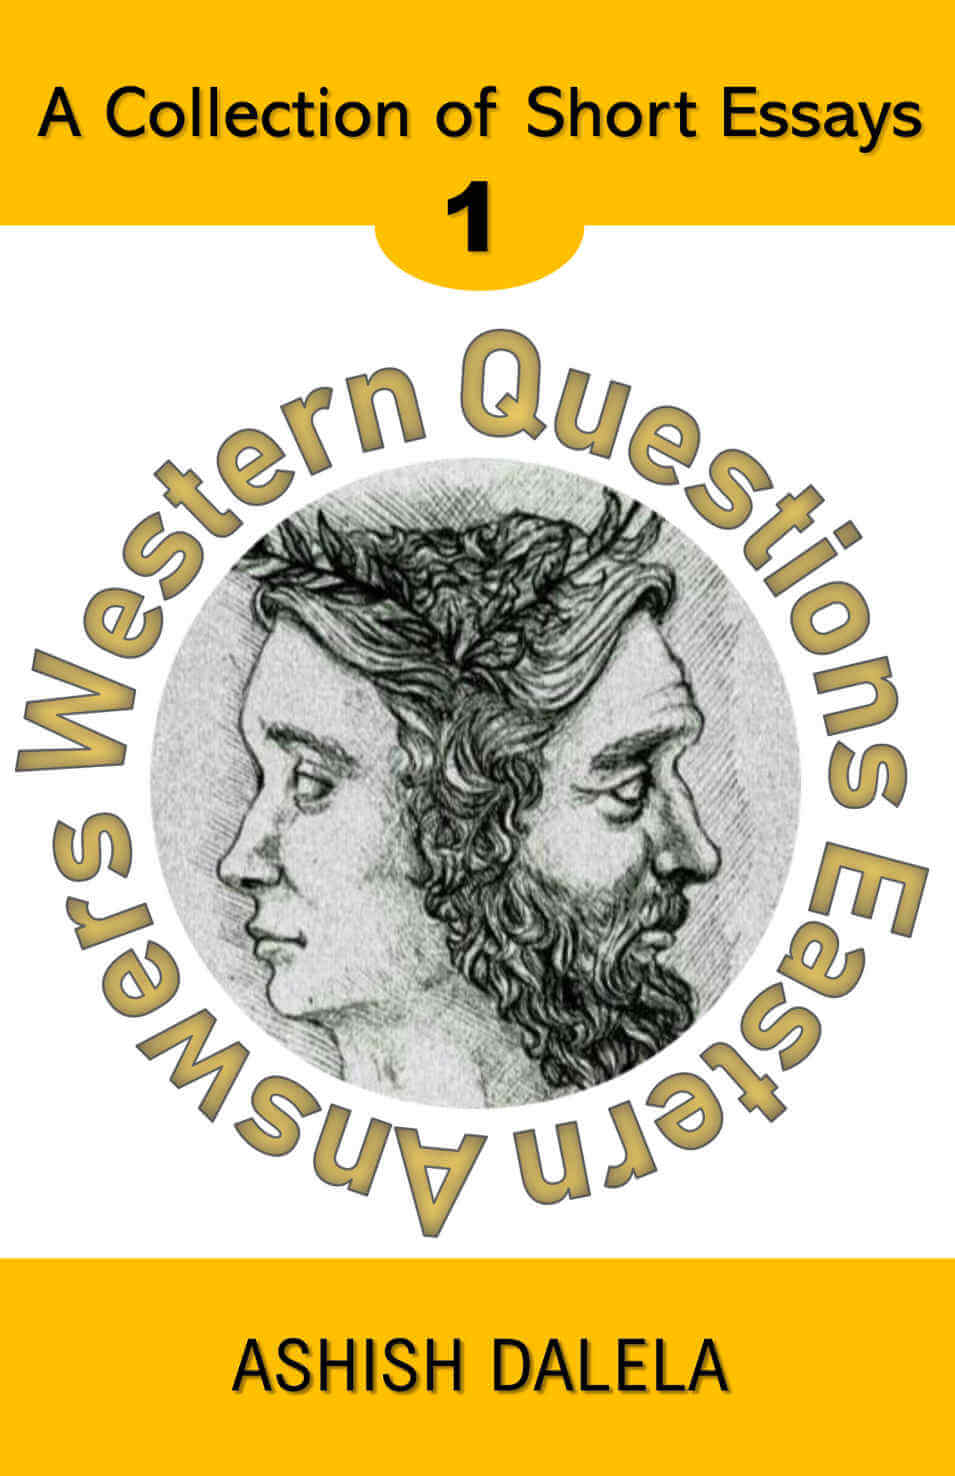 Domande occidentali Risposte orientali: una raccolta di saggi brevi - Volume 1